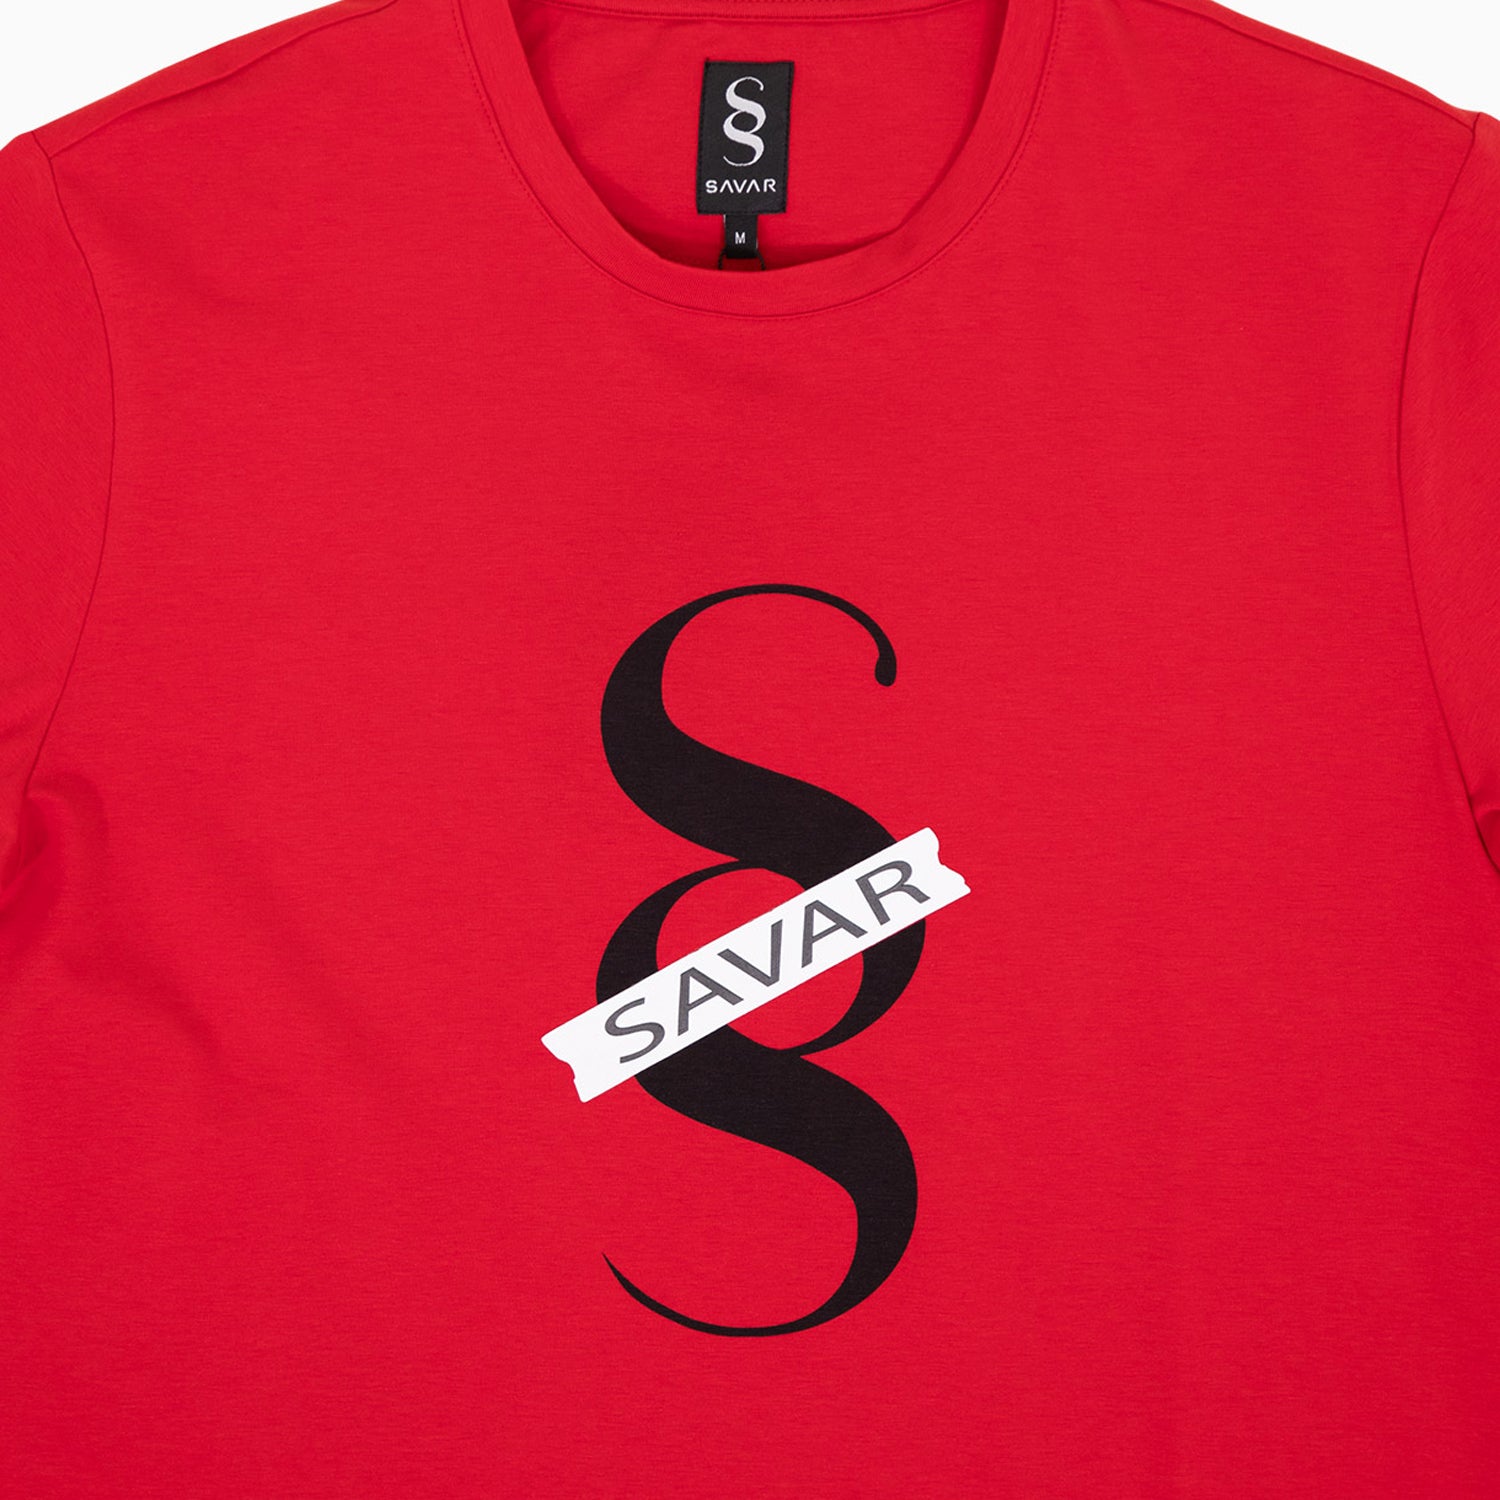 savar-mens-printed-double-short-sleeve-t-shirt-st3017-657